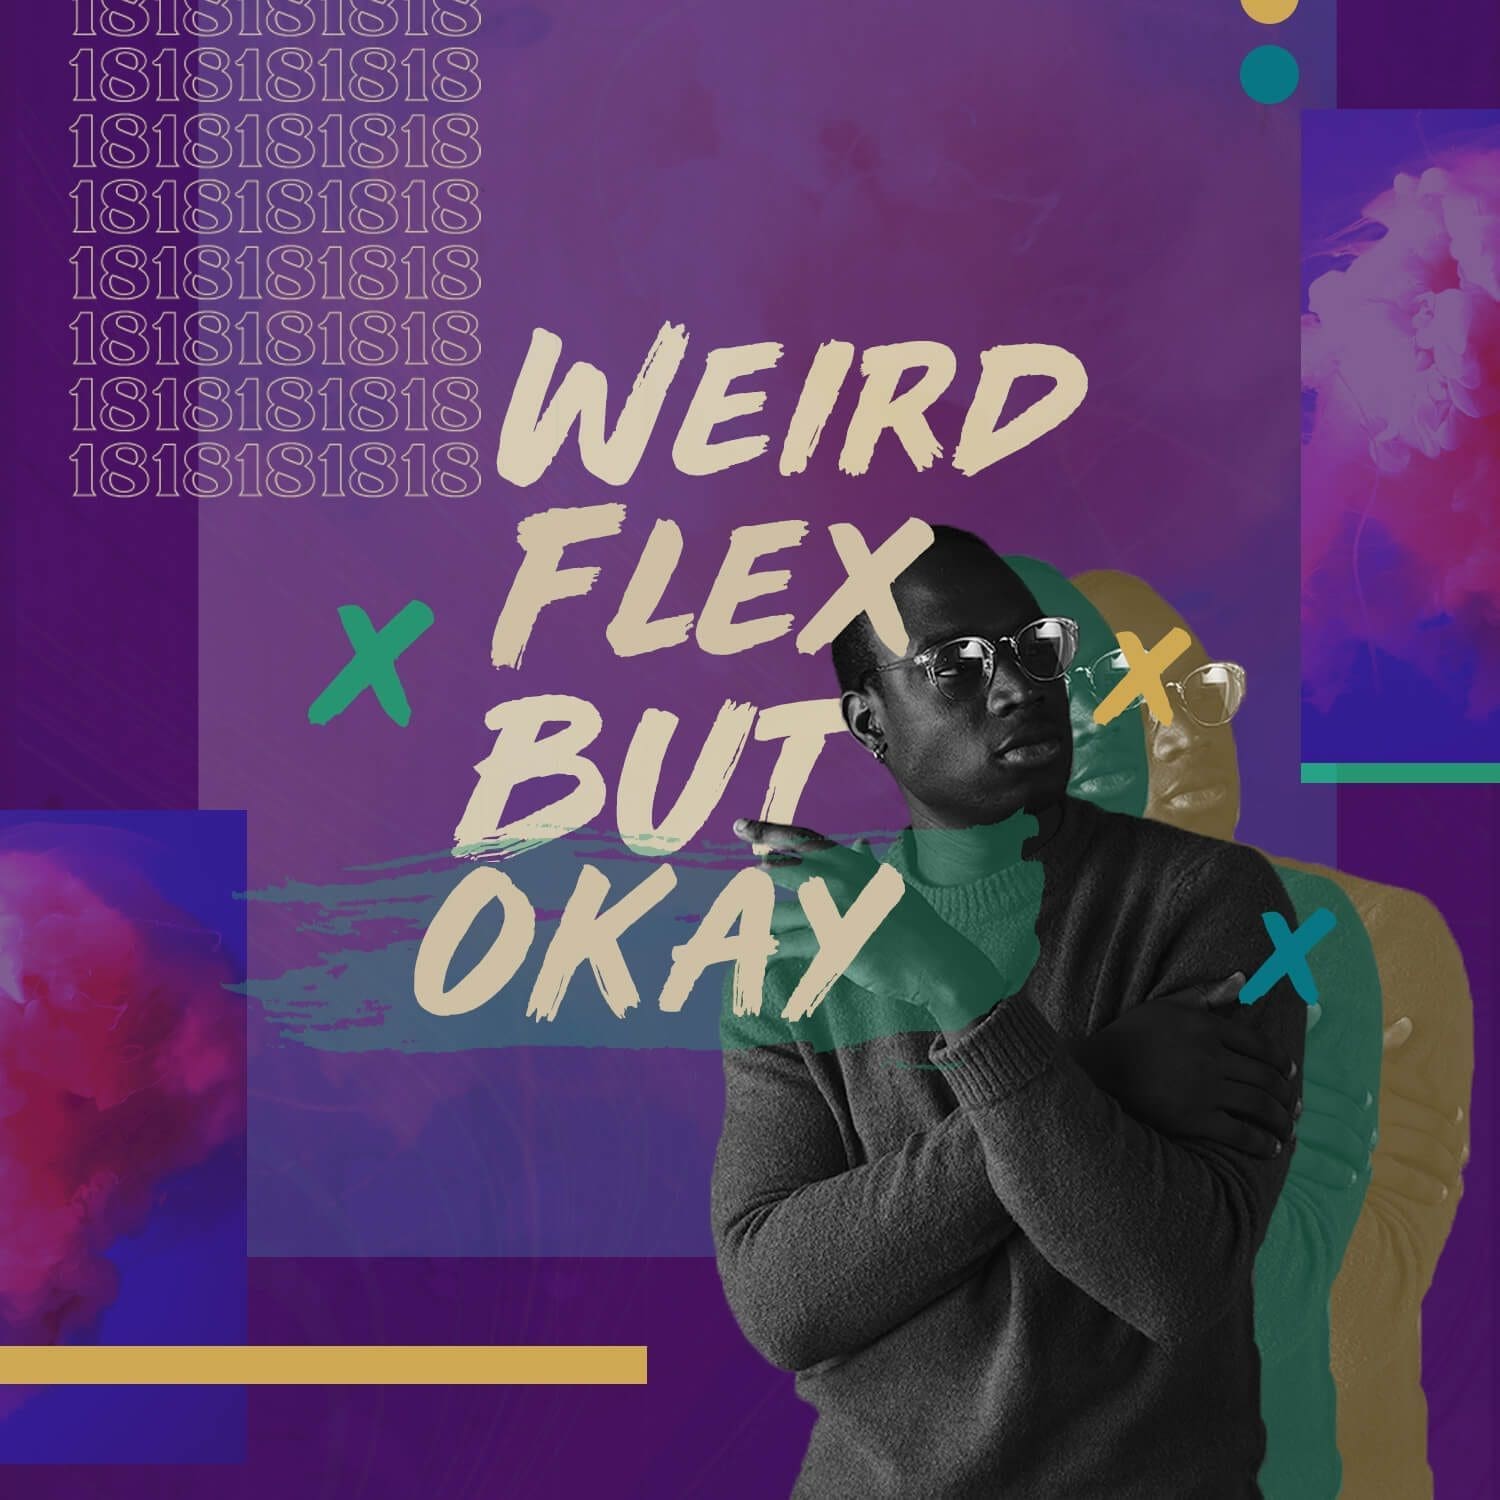 Weird Flex But Okay